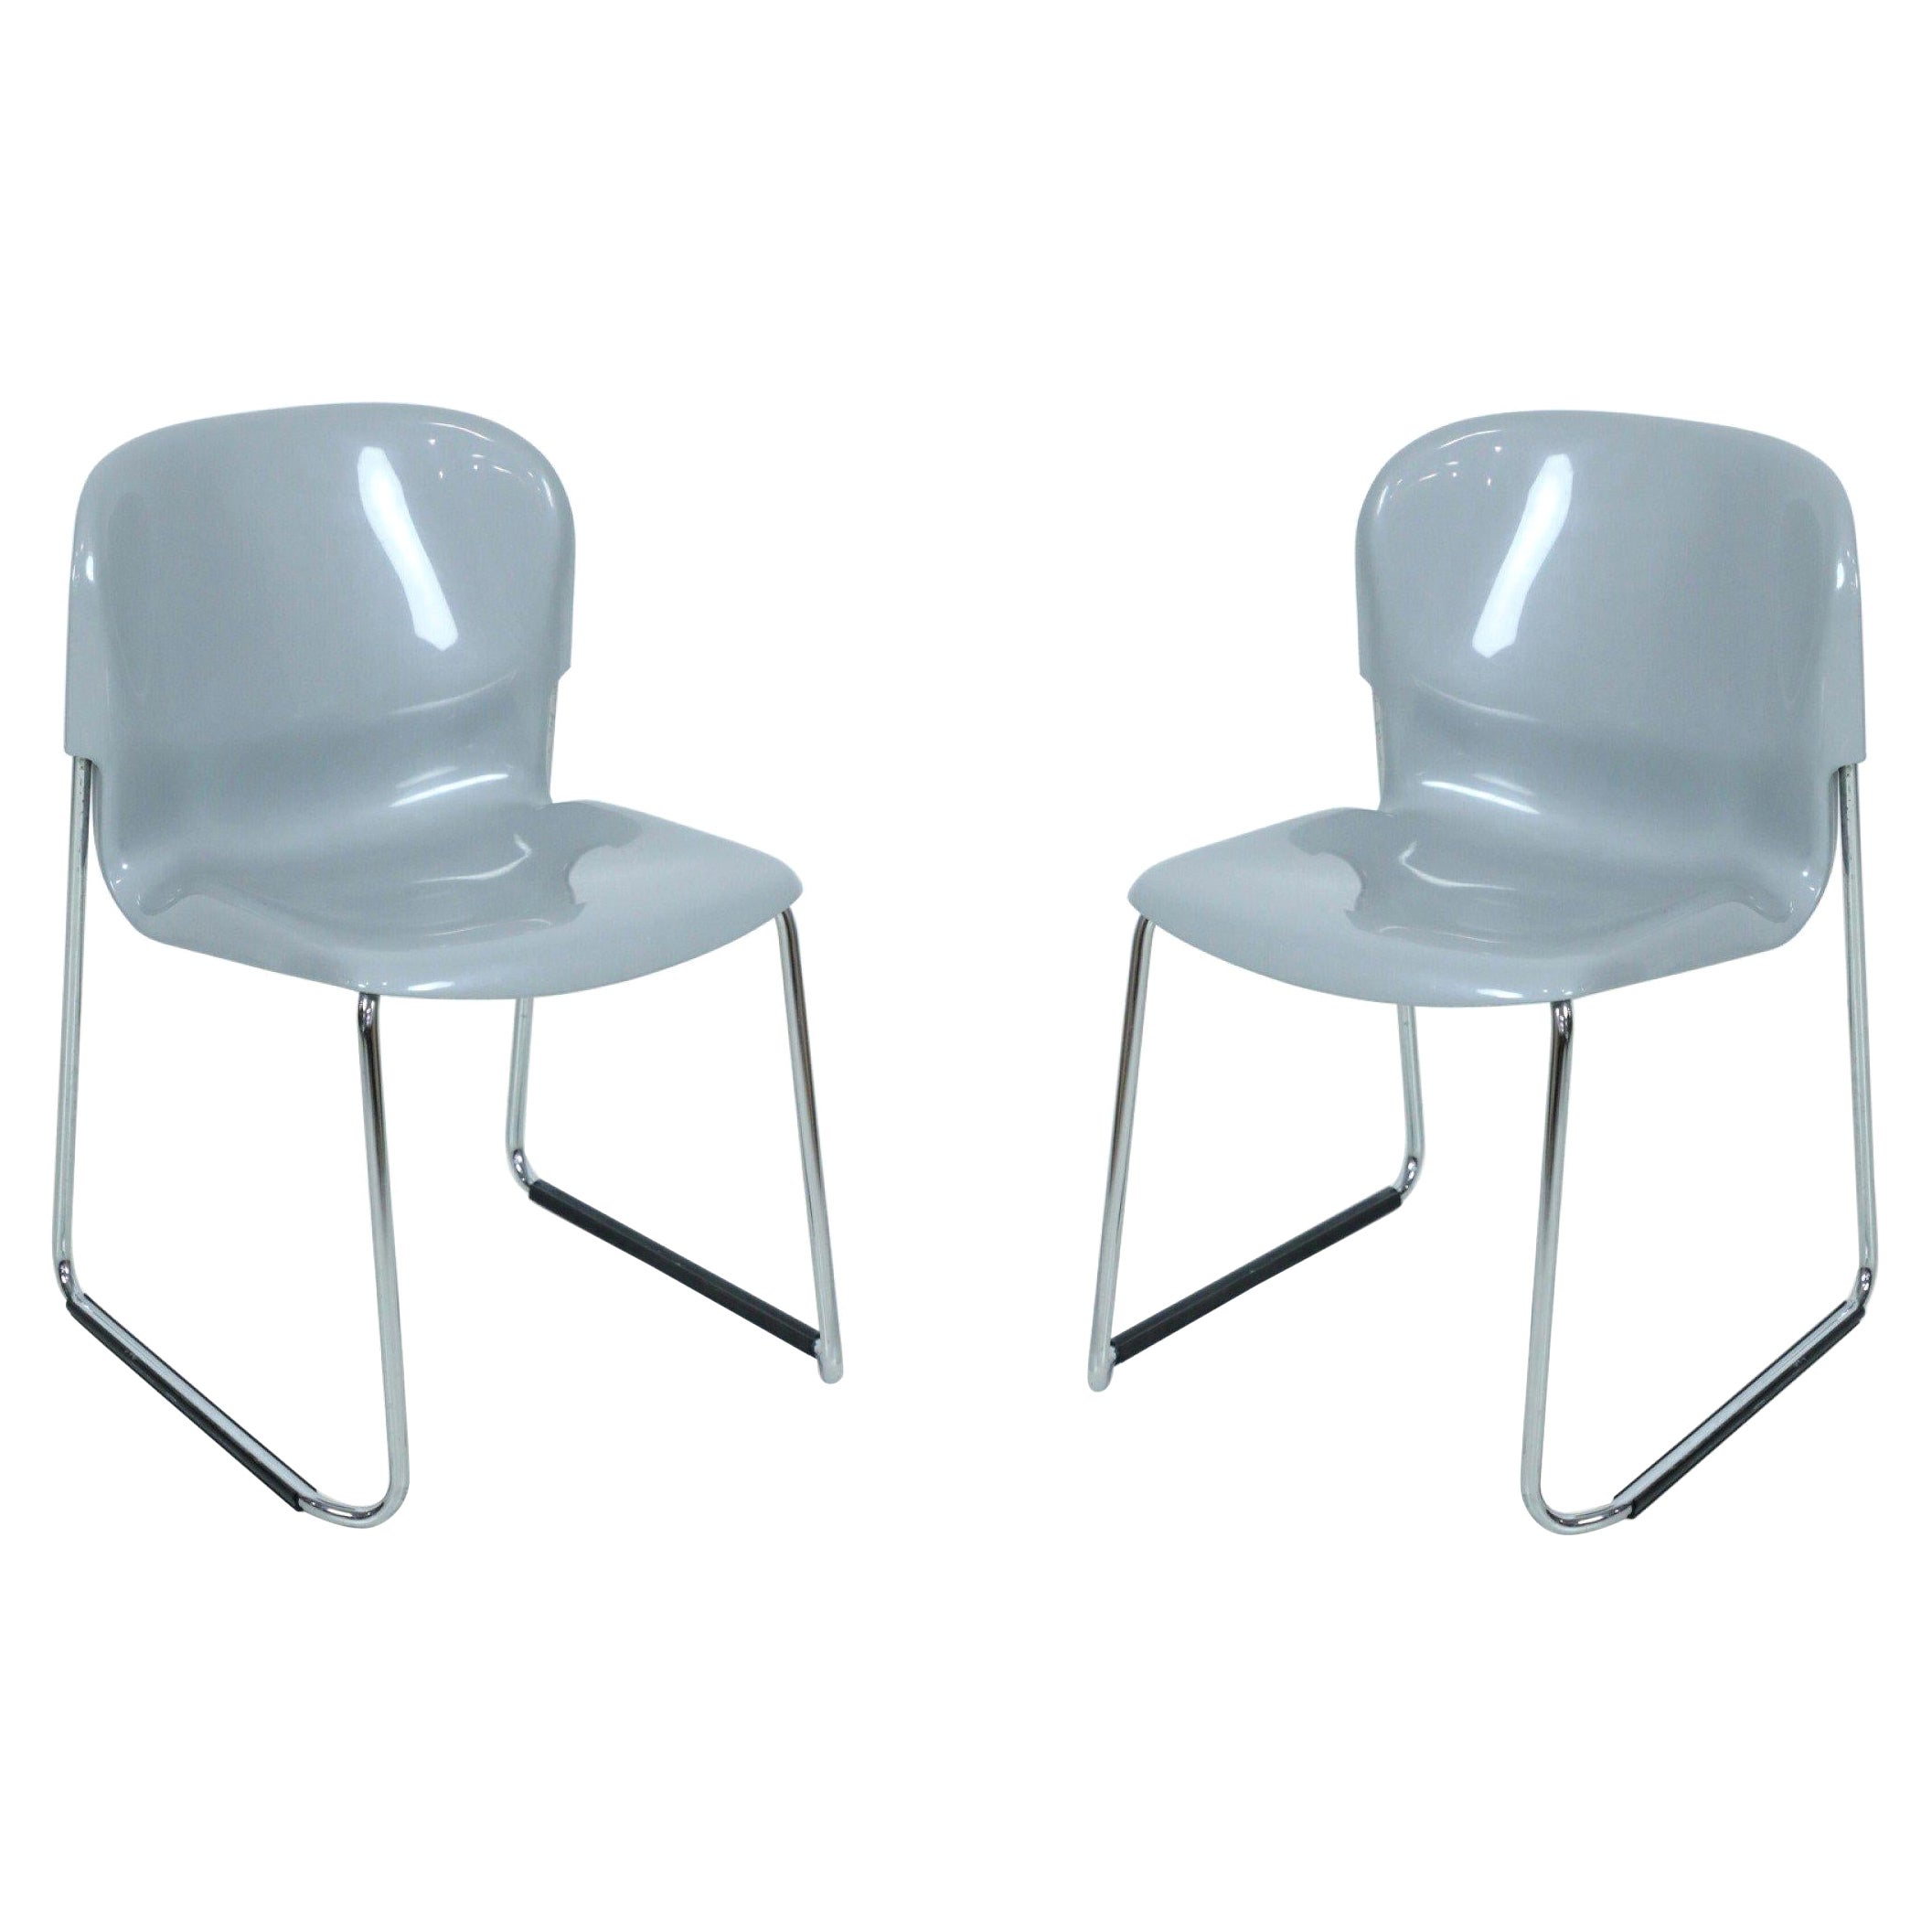 Paire de chaises d'appoint en plastique moulé gris et chrome de l'Atelier Nova DSM400K du milieu du siècle dernier